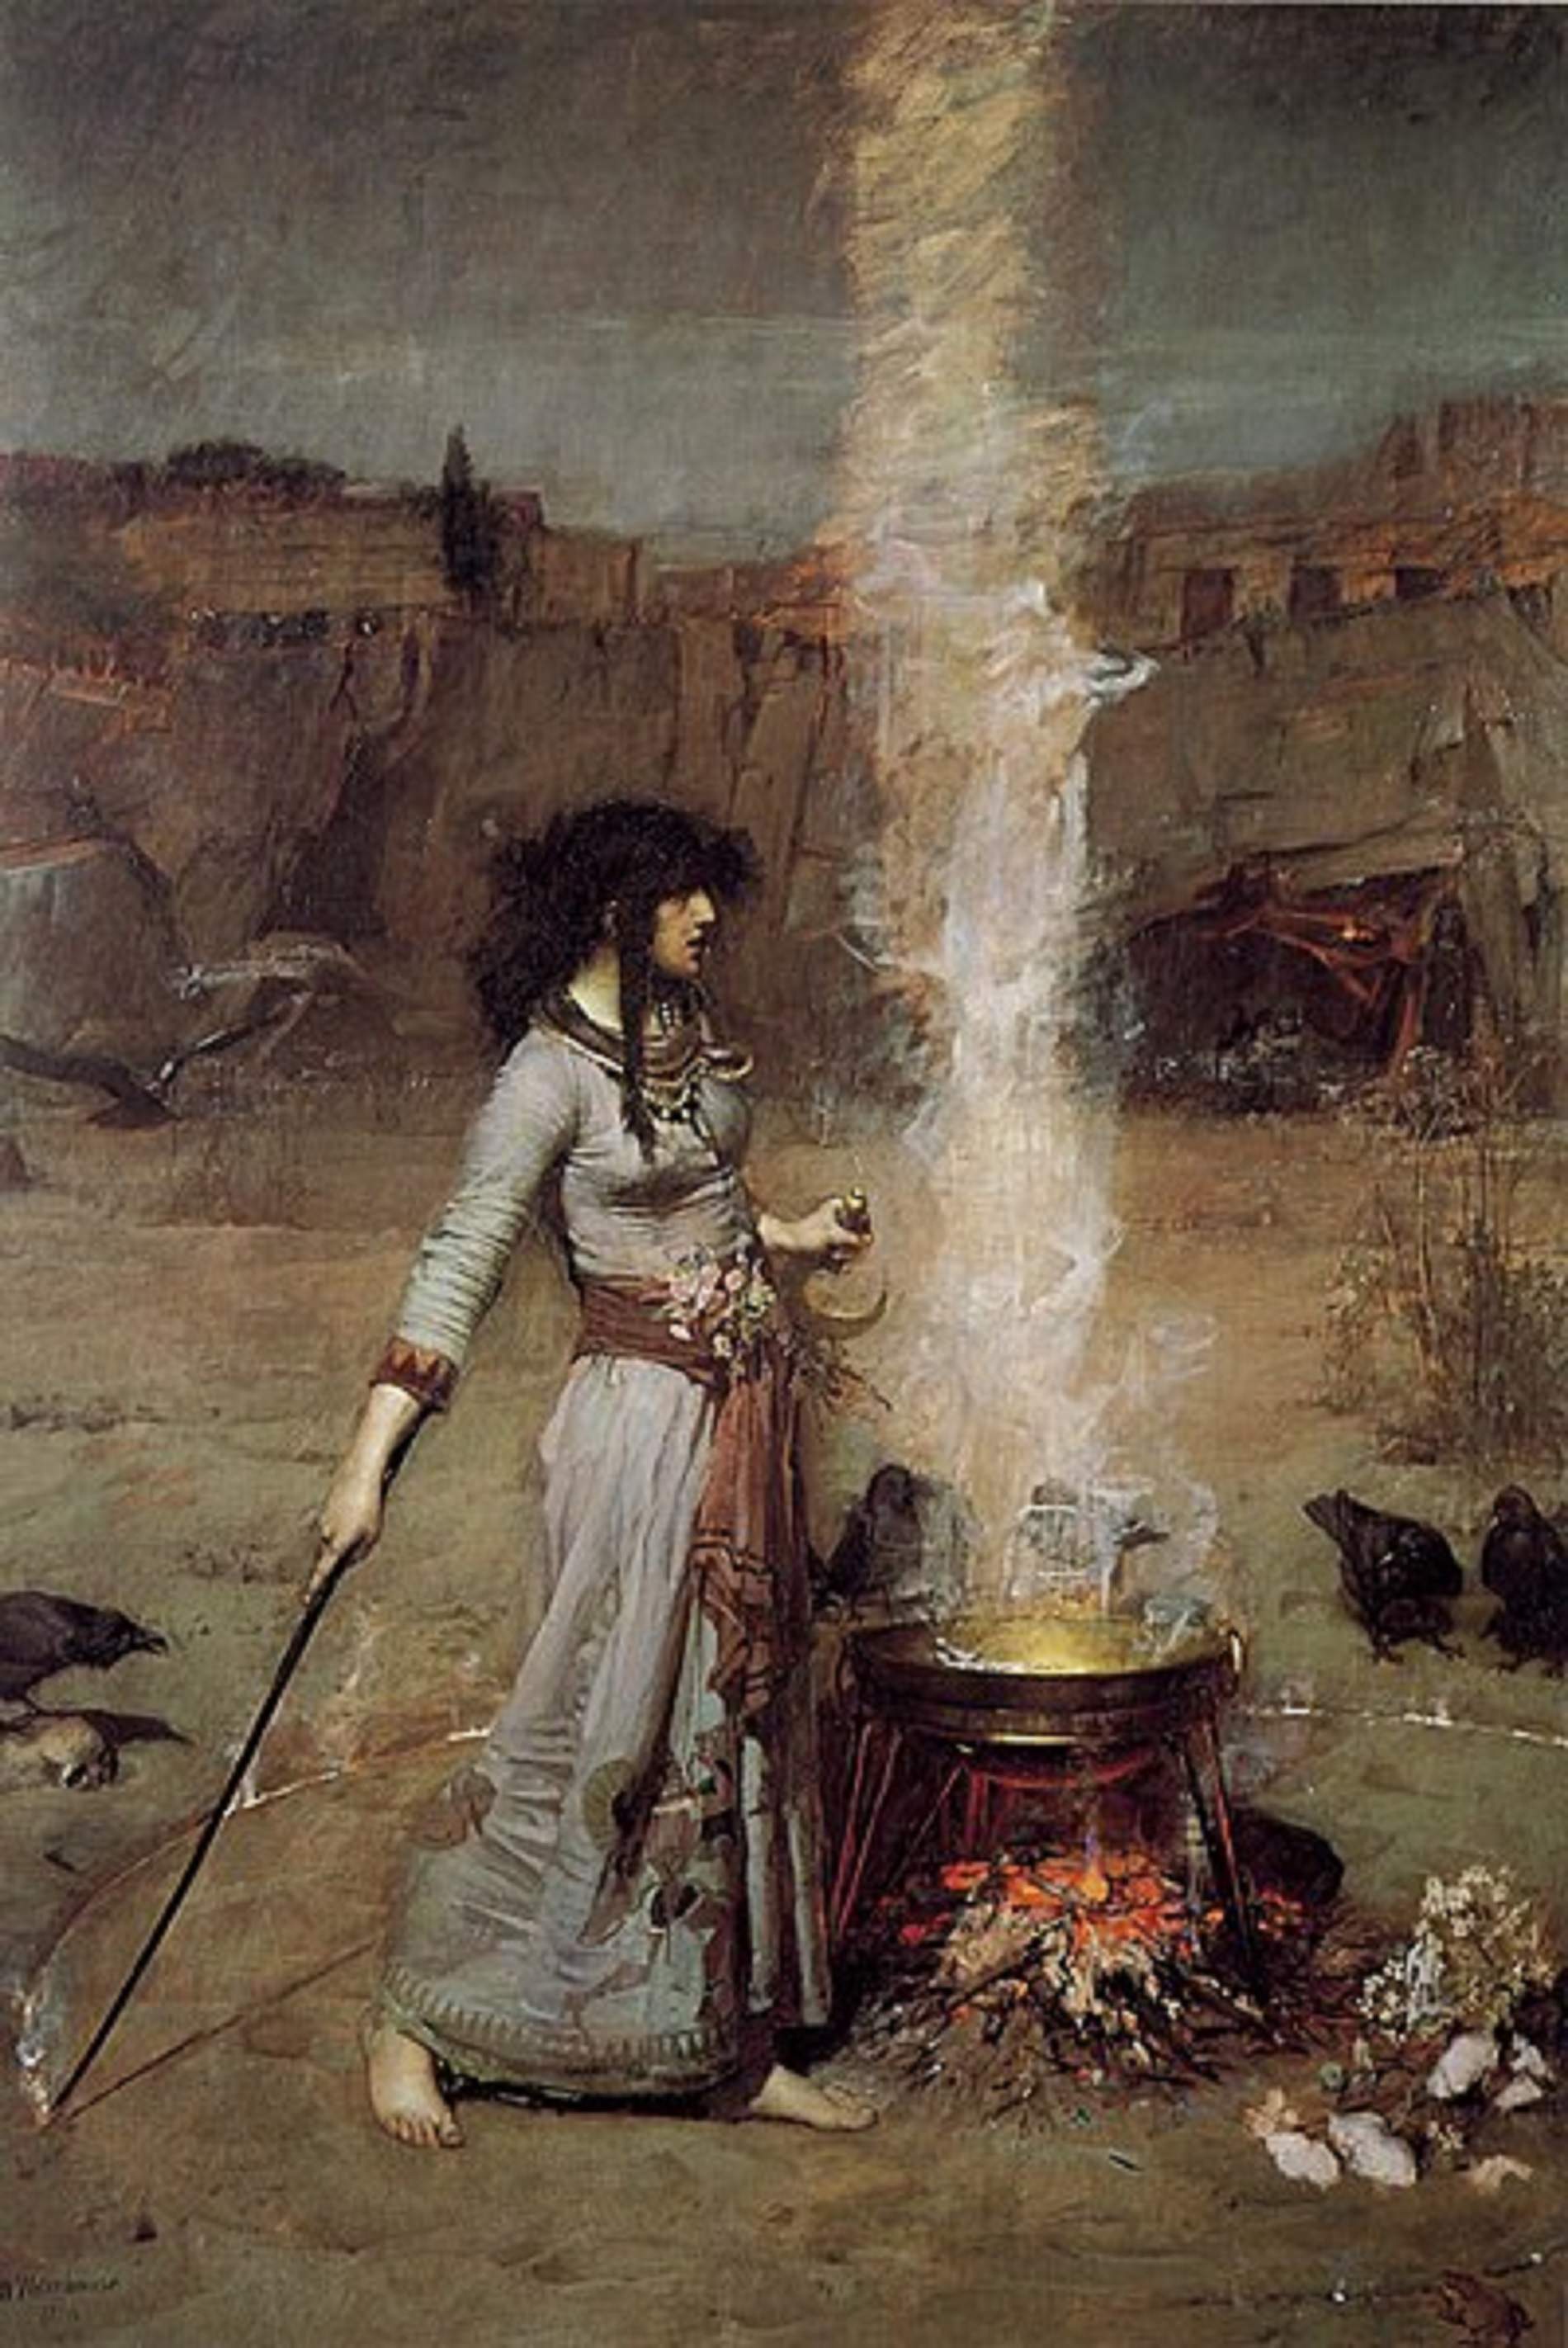 Representación de una bruja trazando el círculo magic con fuego (1896). Fuente Museo Tate Britain. Londres